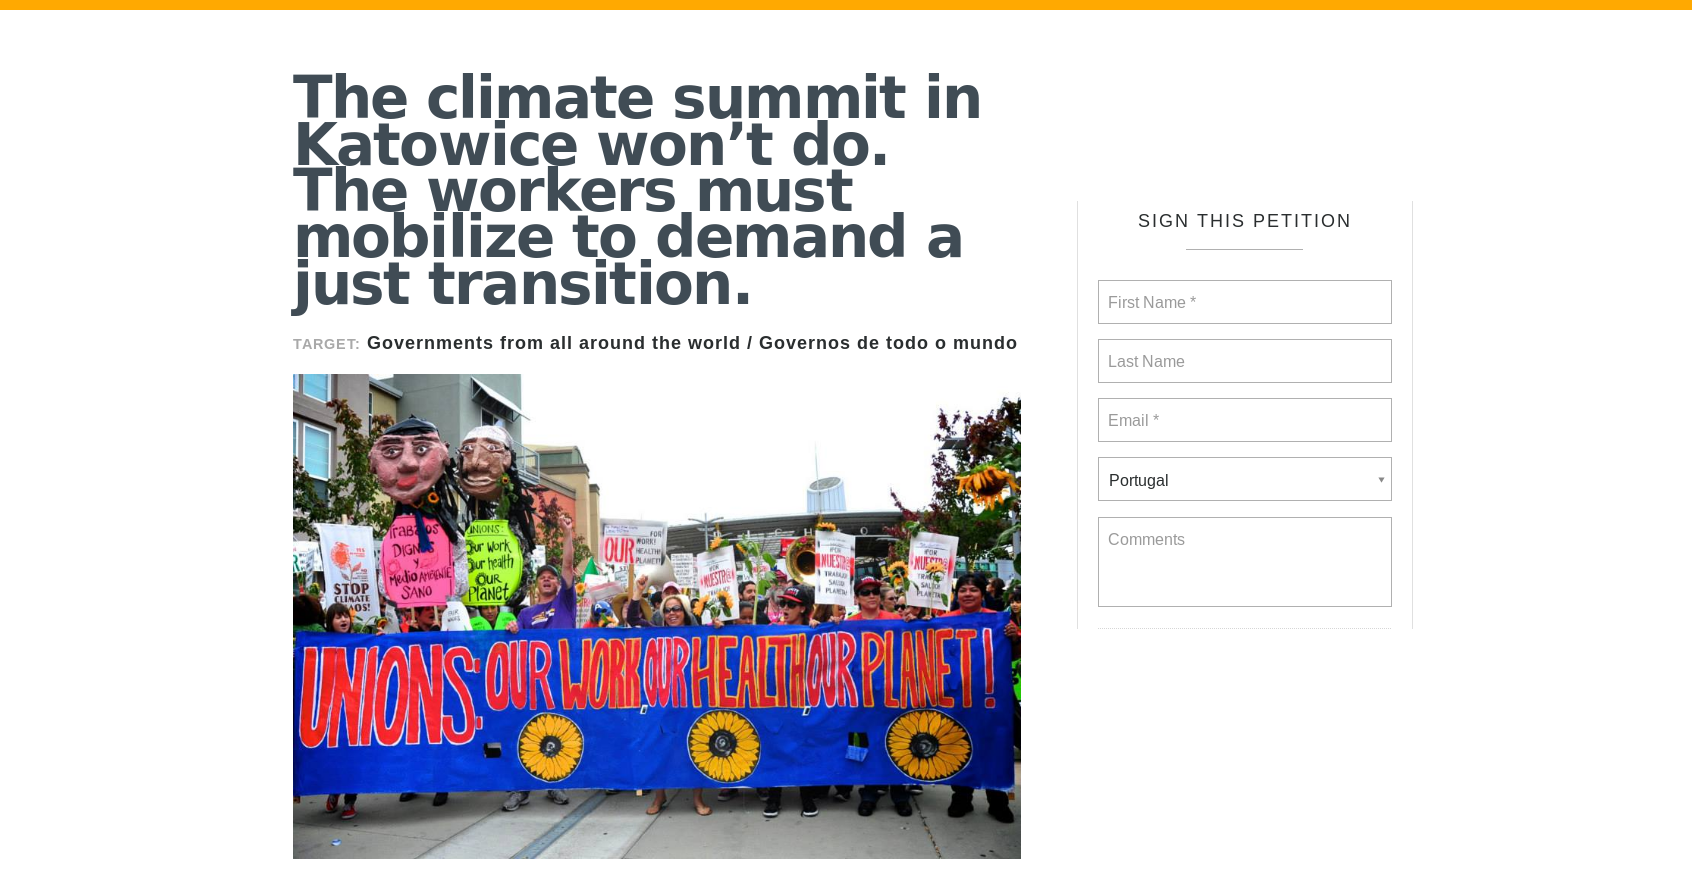 Declaração: A cimeira do clima em Katowice não serve. Os trabalhadores precisam de mobilizar-se para exigir uma transição justa.